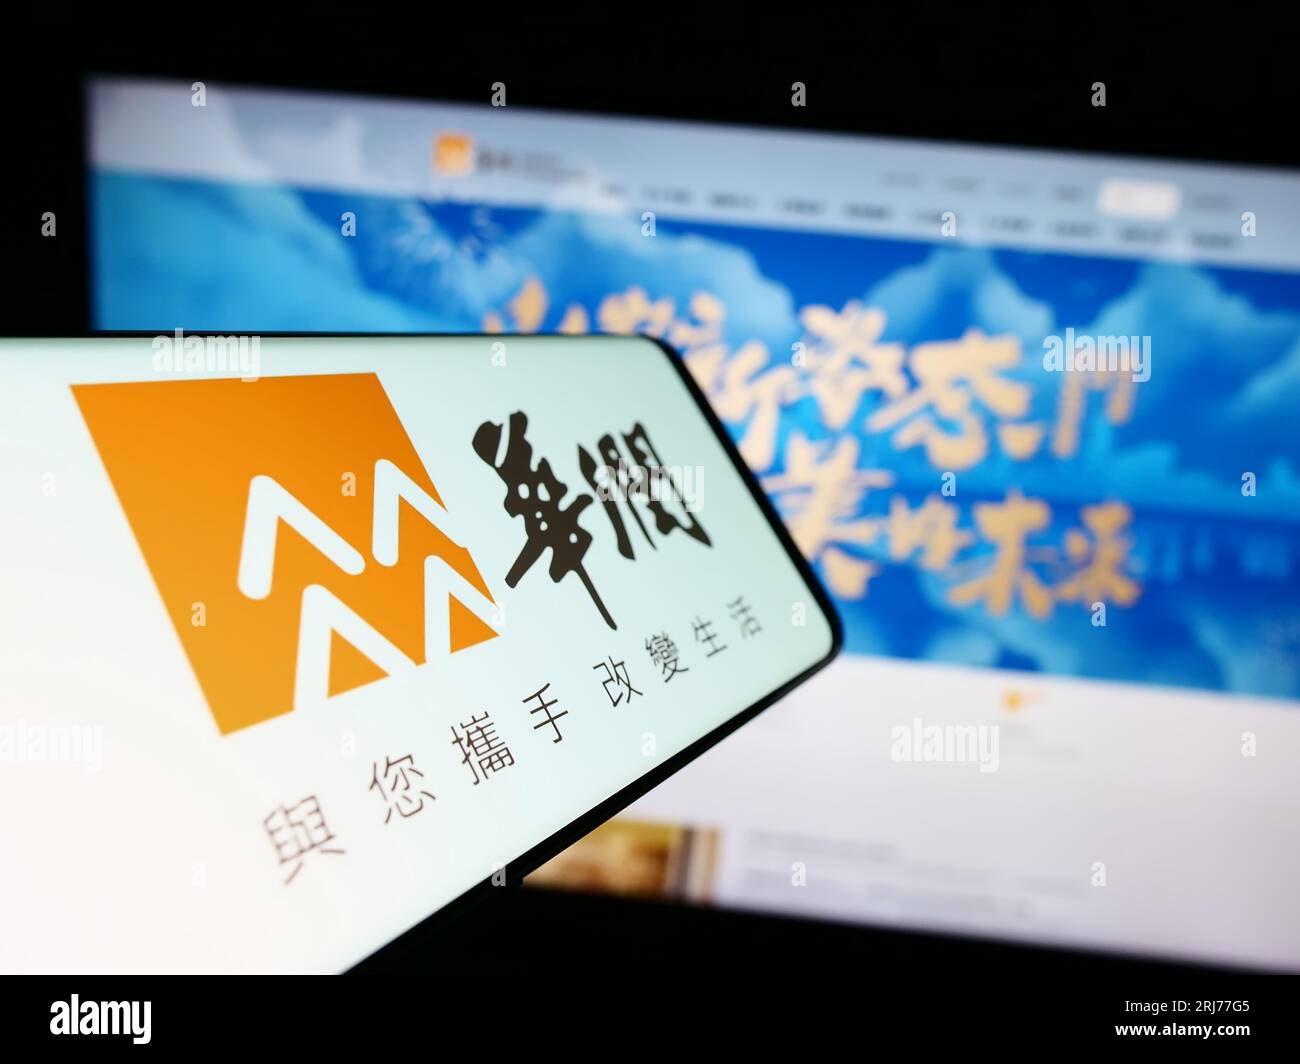 Cellulare con logo di China Resources Holdings Company Limited (CRC) sullo schermo davanti al sito Web aziendale. Concentrarsi sul centro del display del telefono. Foto Stock